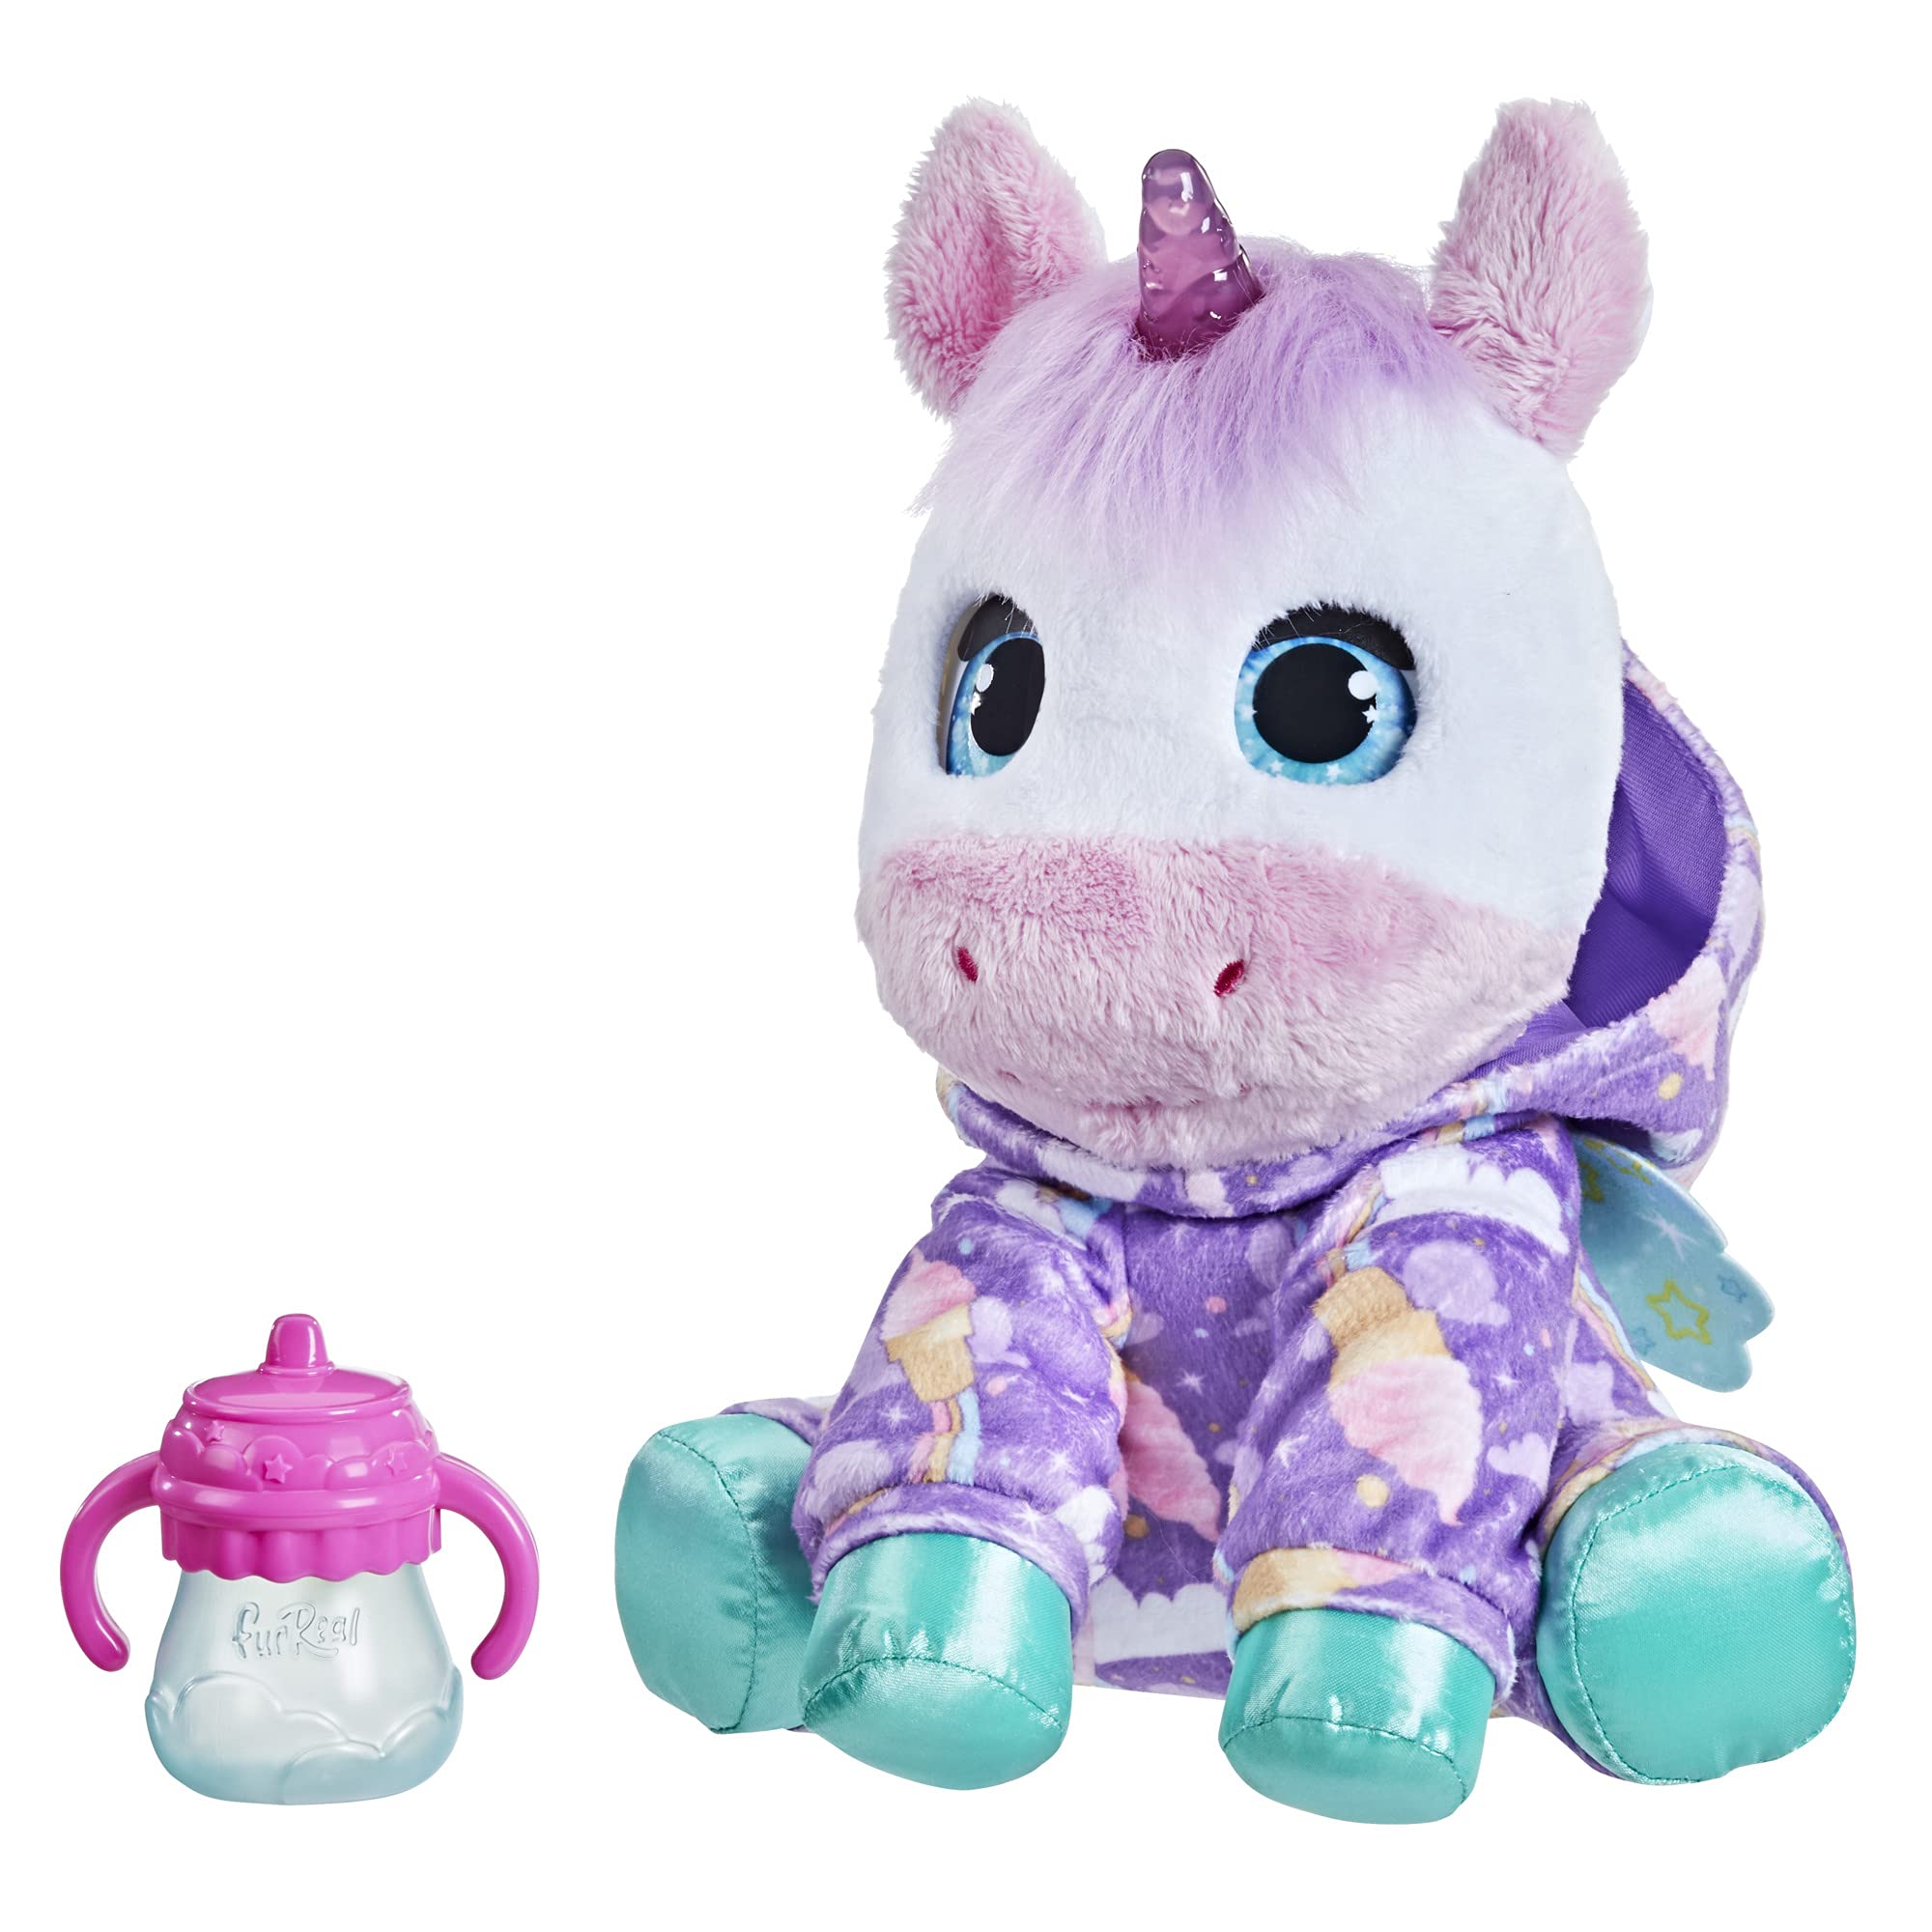 FurReal Sweet Jammiecorn - Juguete de peluche interactivo de unicornio, juguete iluminado con más de 30 sonidos